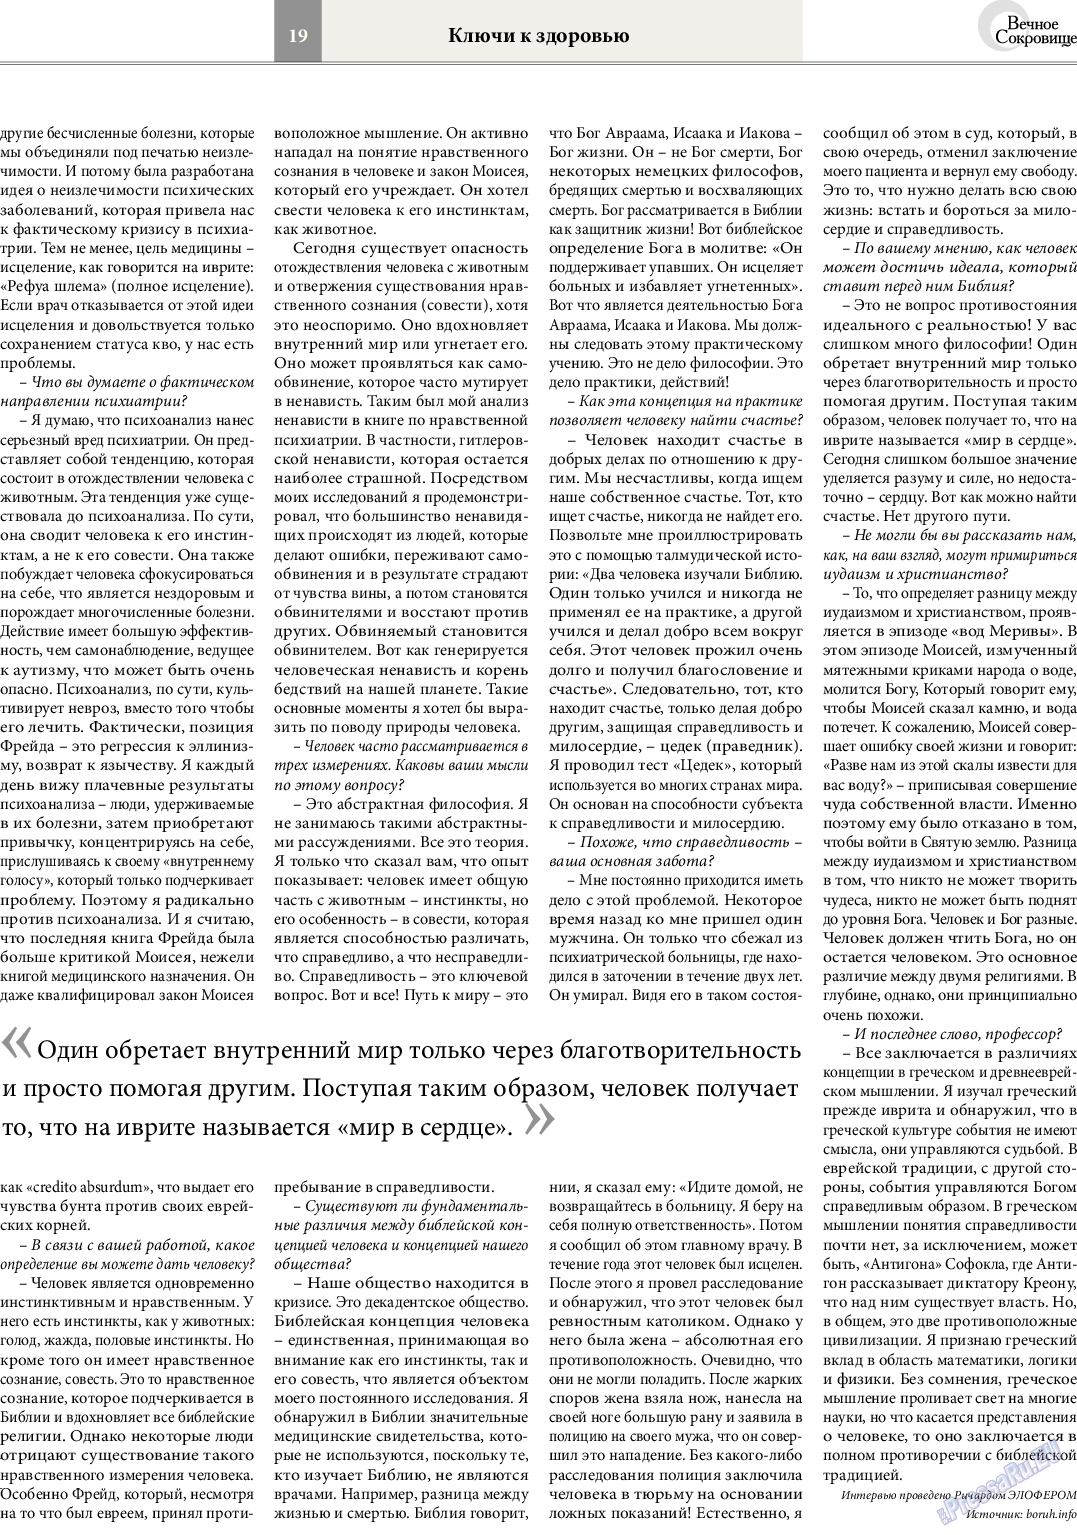 Вечное сокровище, газета. 2014 №4 стр.19